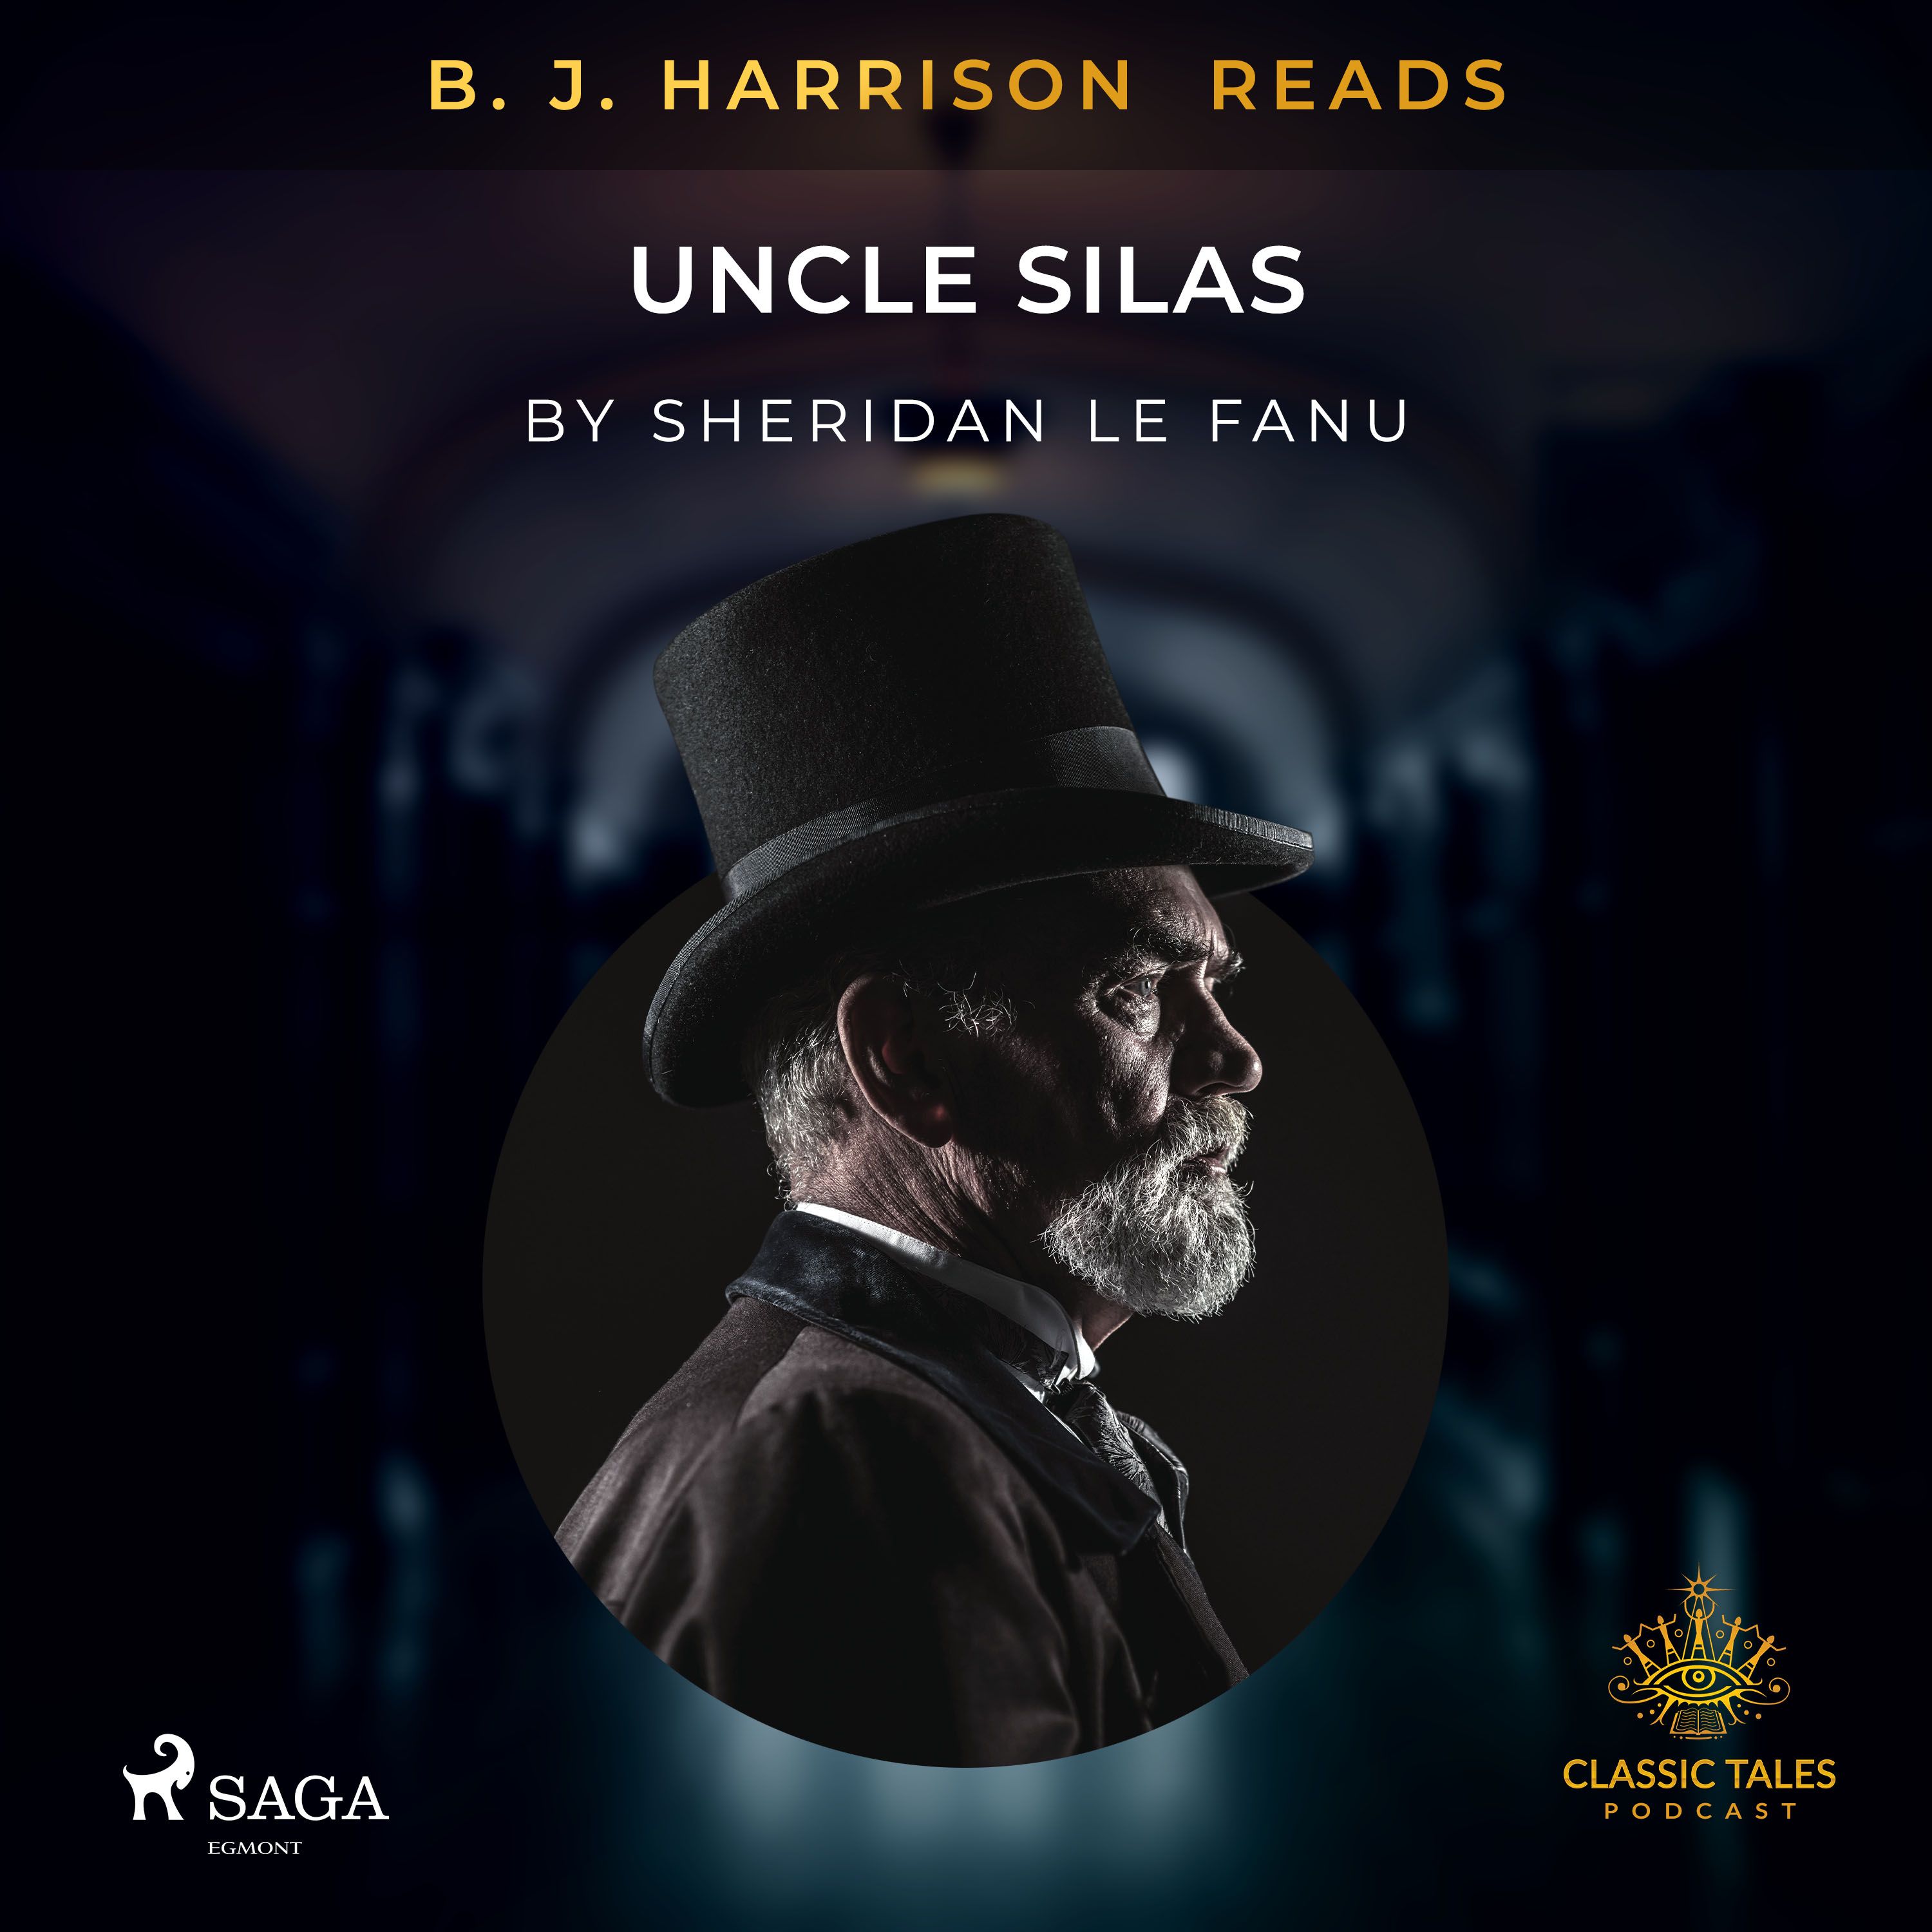 B. J. Harrison Reads Uncle Silas, ljudbok av Sheridan Le Fanu